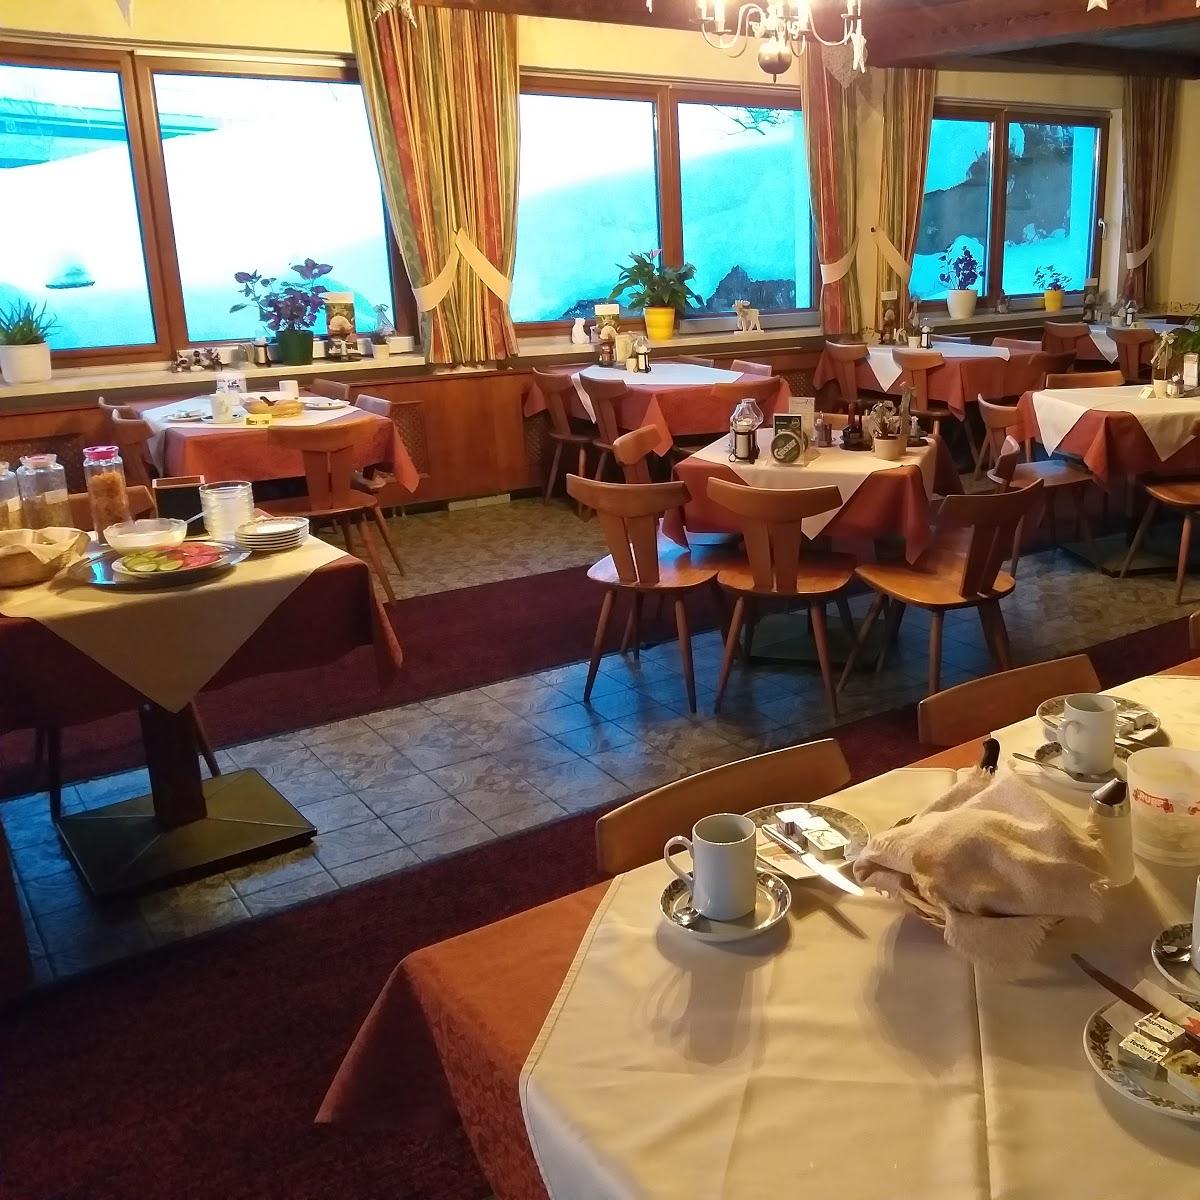 Restaurant "Gasthof  Zum Sessellift " in Mitterbach am Erlaufsee